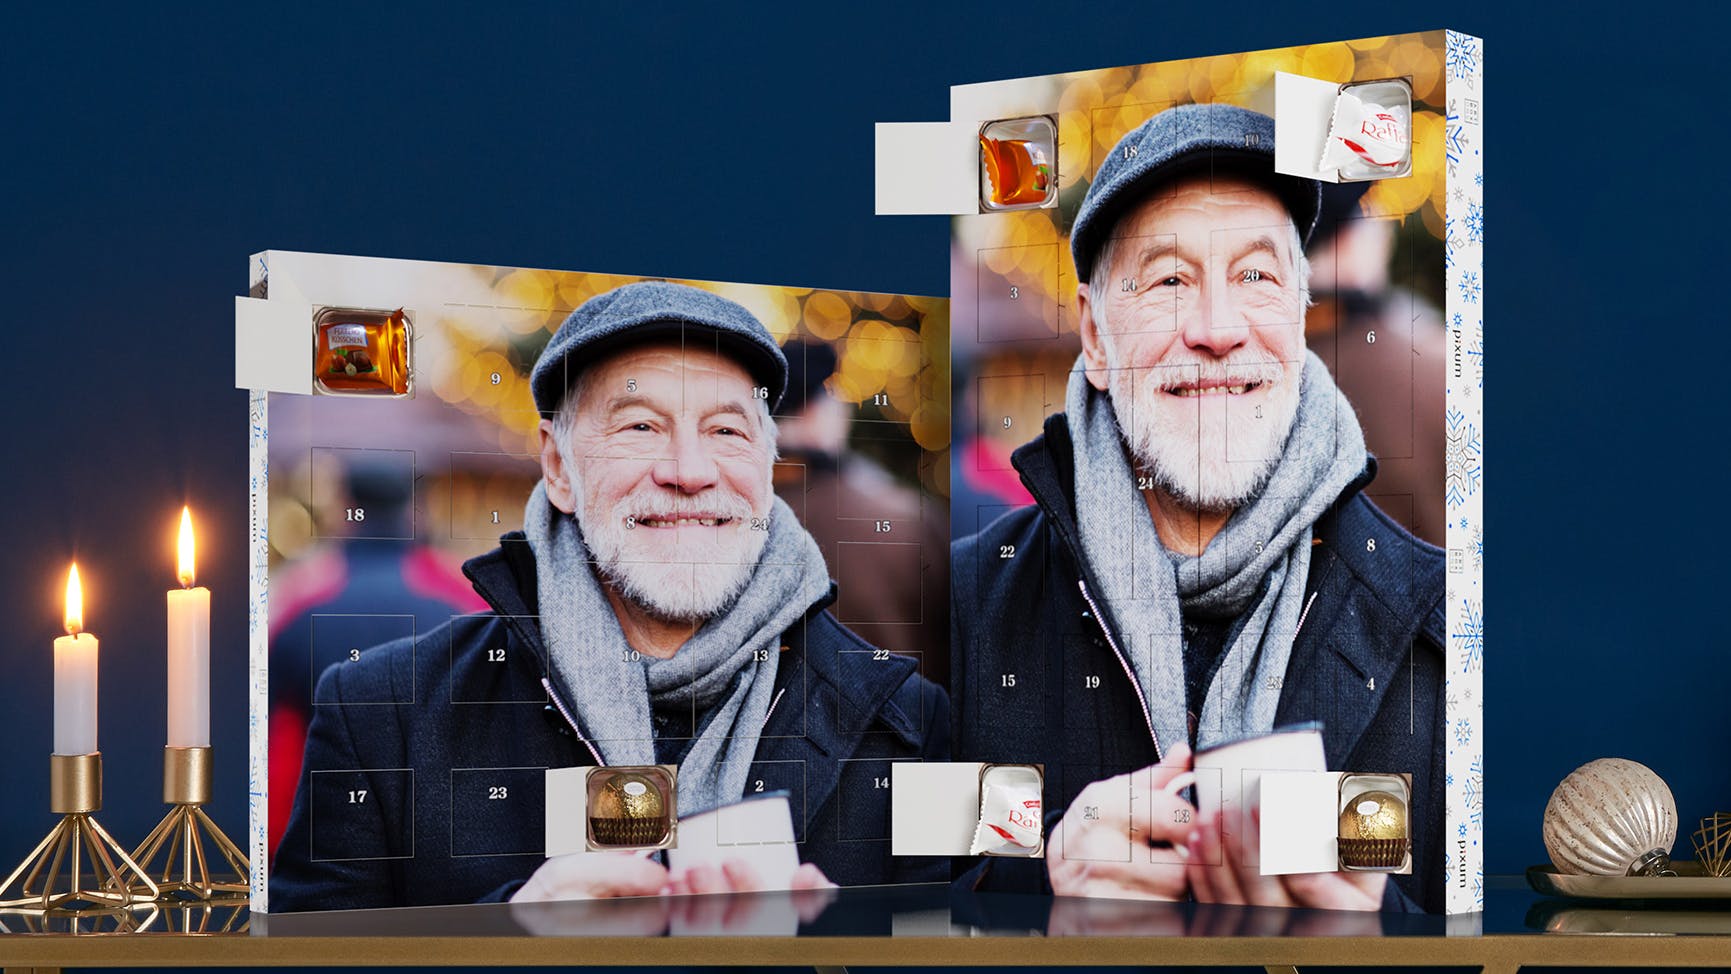 Adventskalender mit Ferrero Pralinen und einem Foto eines älteren Mannes, der lacht